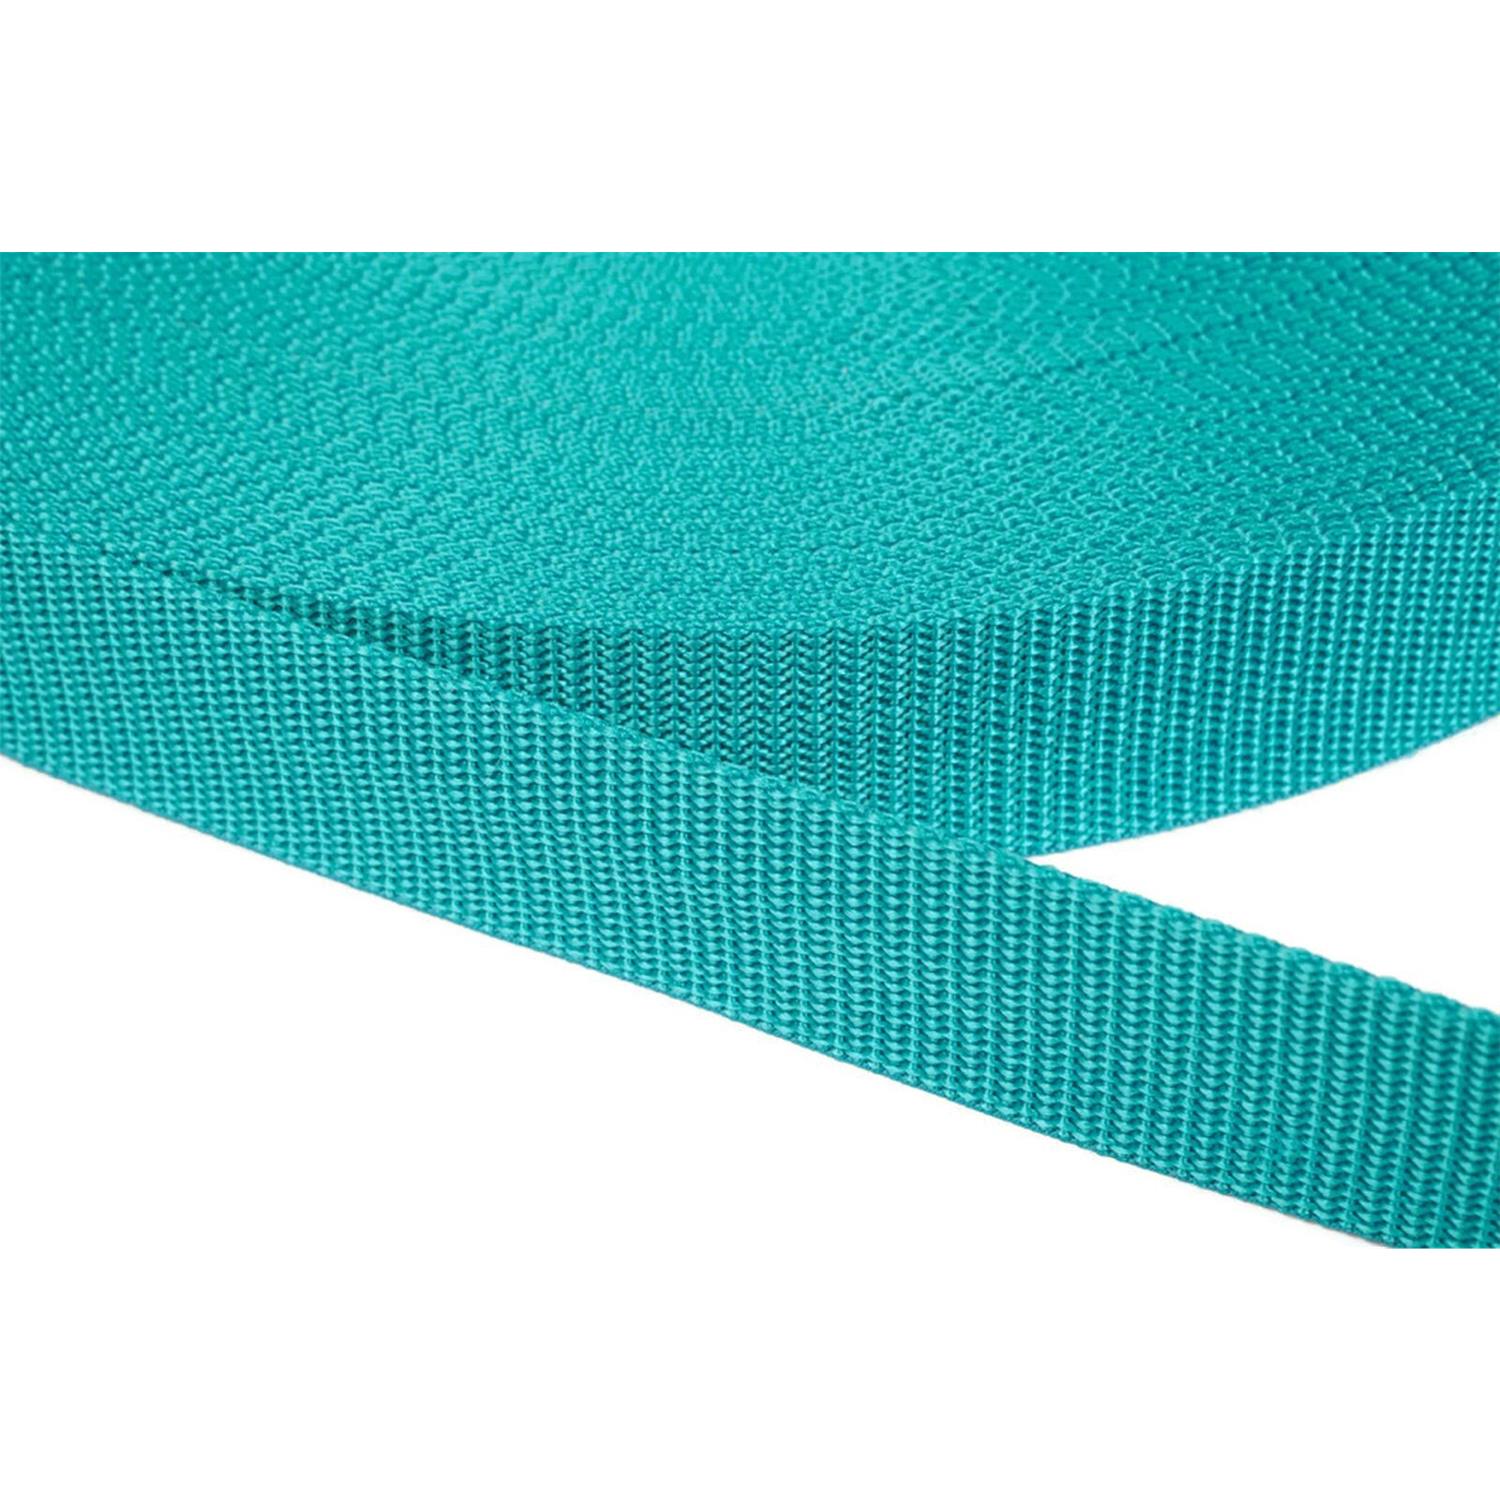 Gurtband 40mm breit aus Polypropylen in 41 Farben 42 - türkisgrün 06 Meter